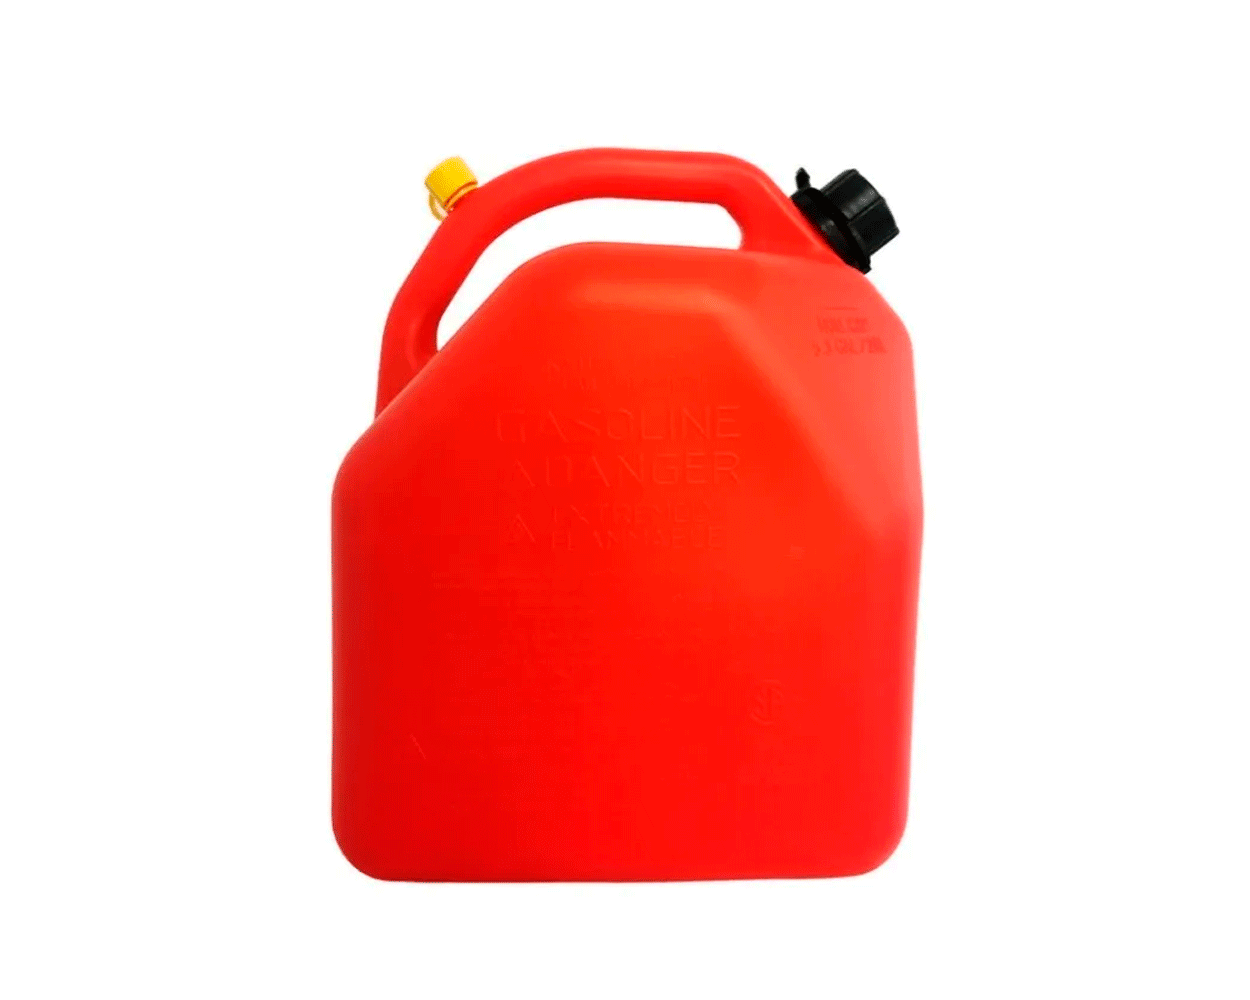 Bidon de gasolina para trial de 10 y 20 litros